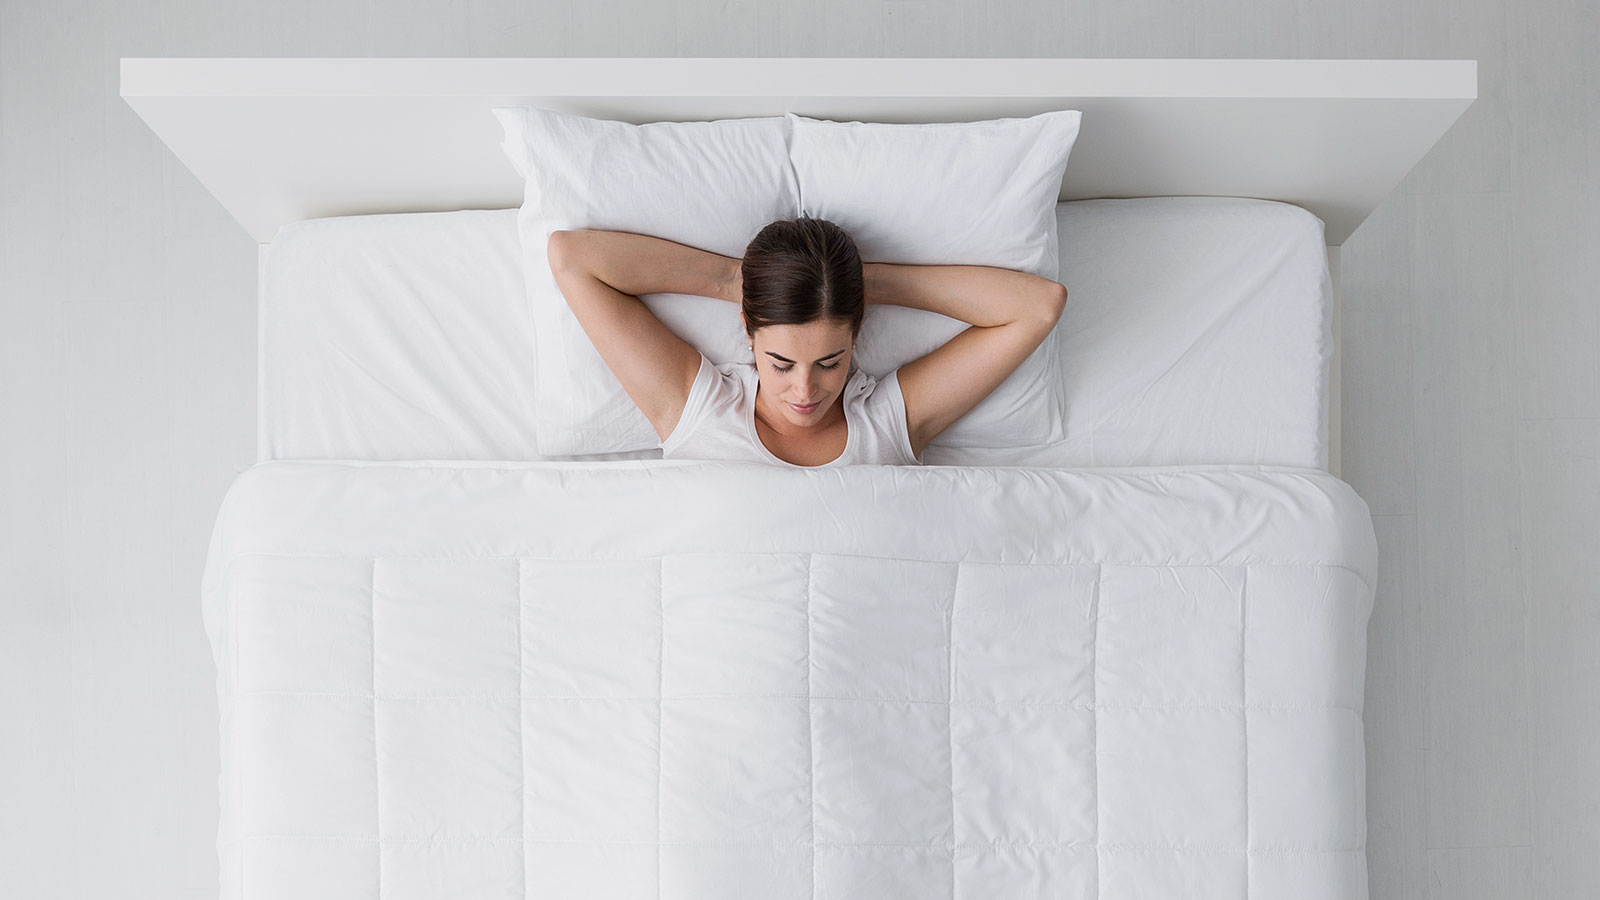 Sırtüstü Uyumak İçin 5 Neden. Uyku Sorunlarınızı Çözebilir